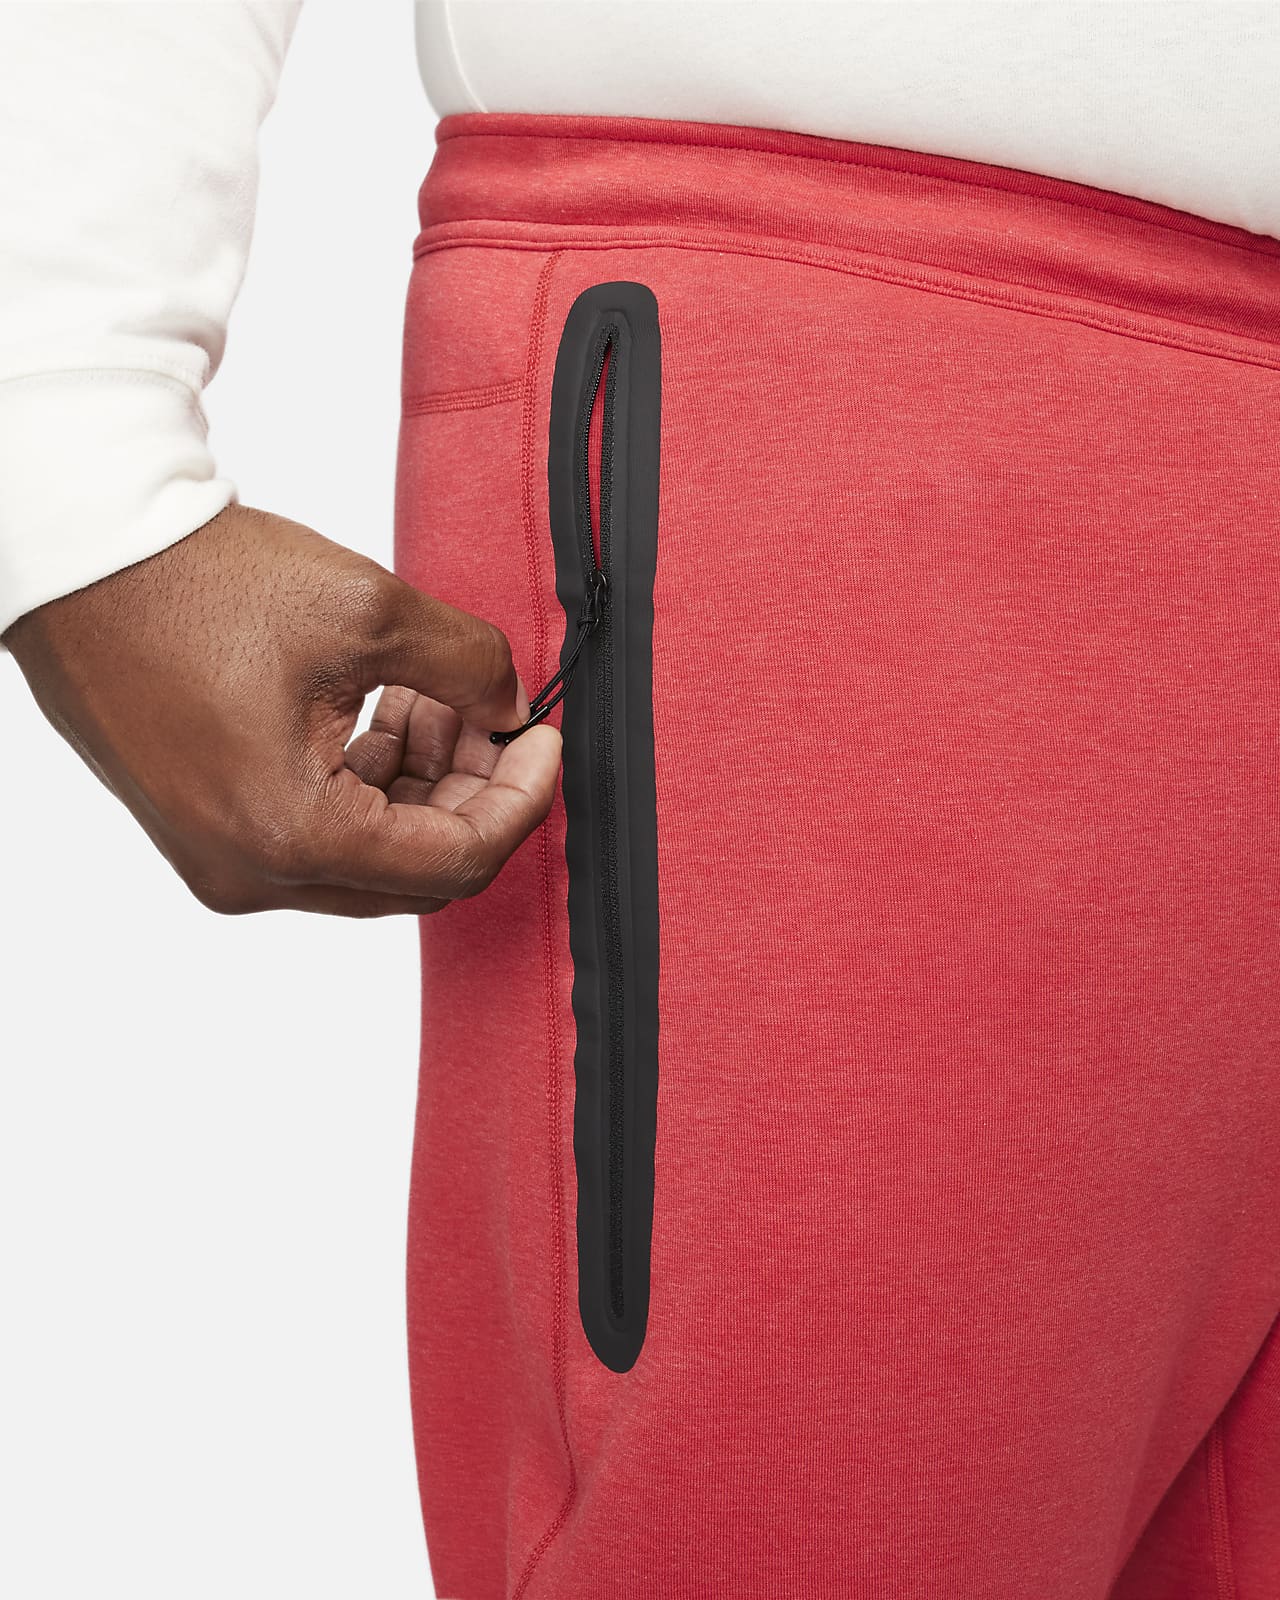 Pantalon de jogging Nike Sportswear Tech Fleece pour homme. Nike BE